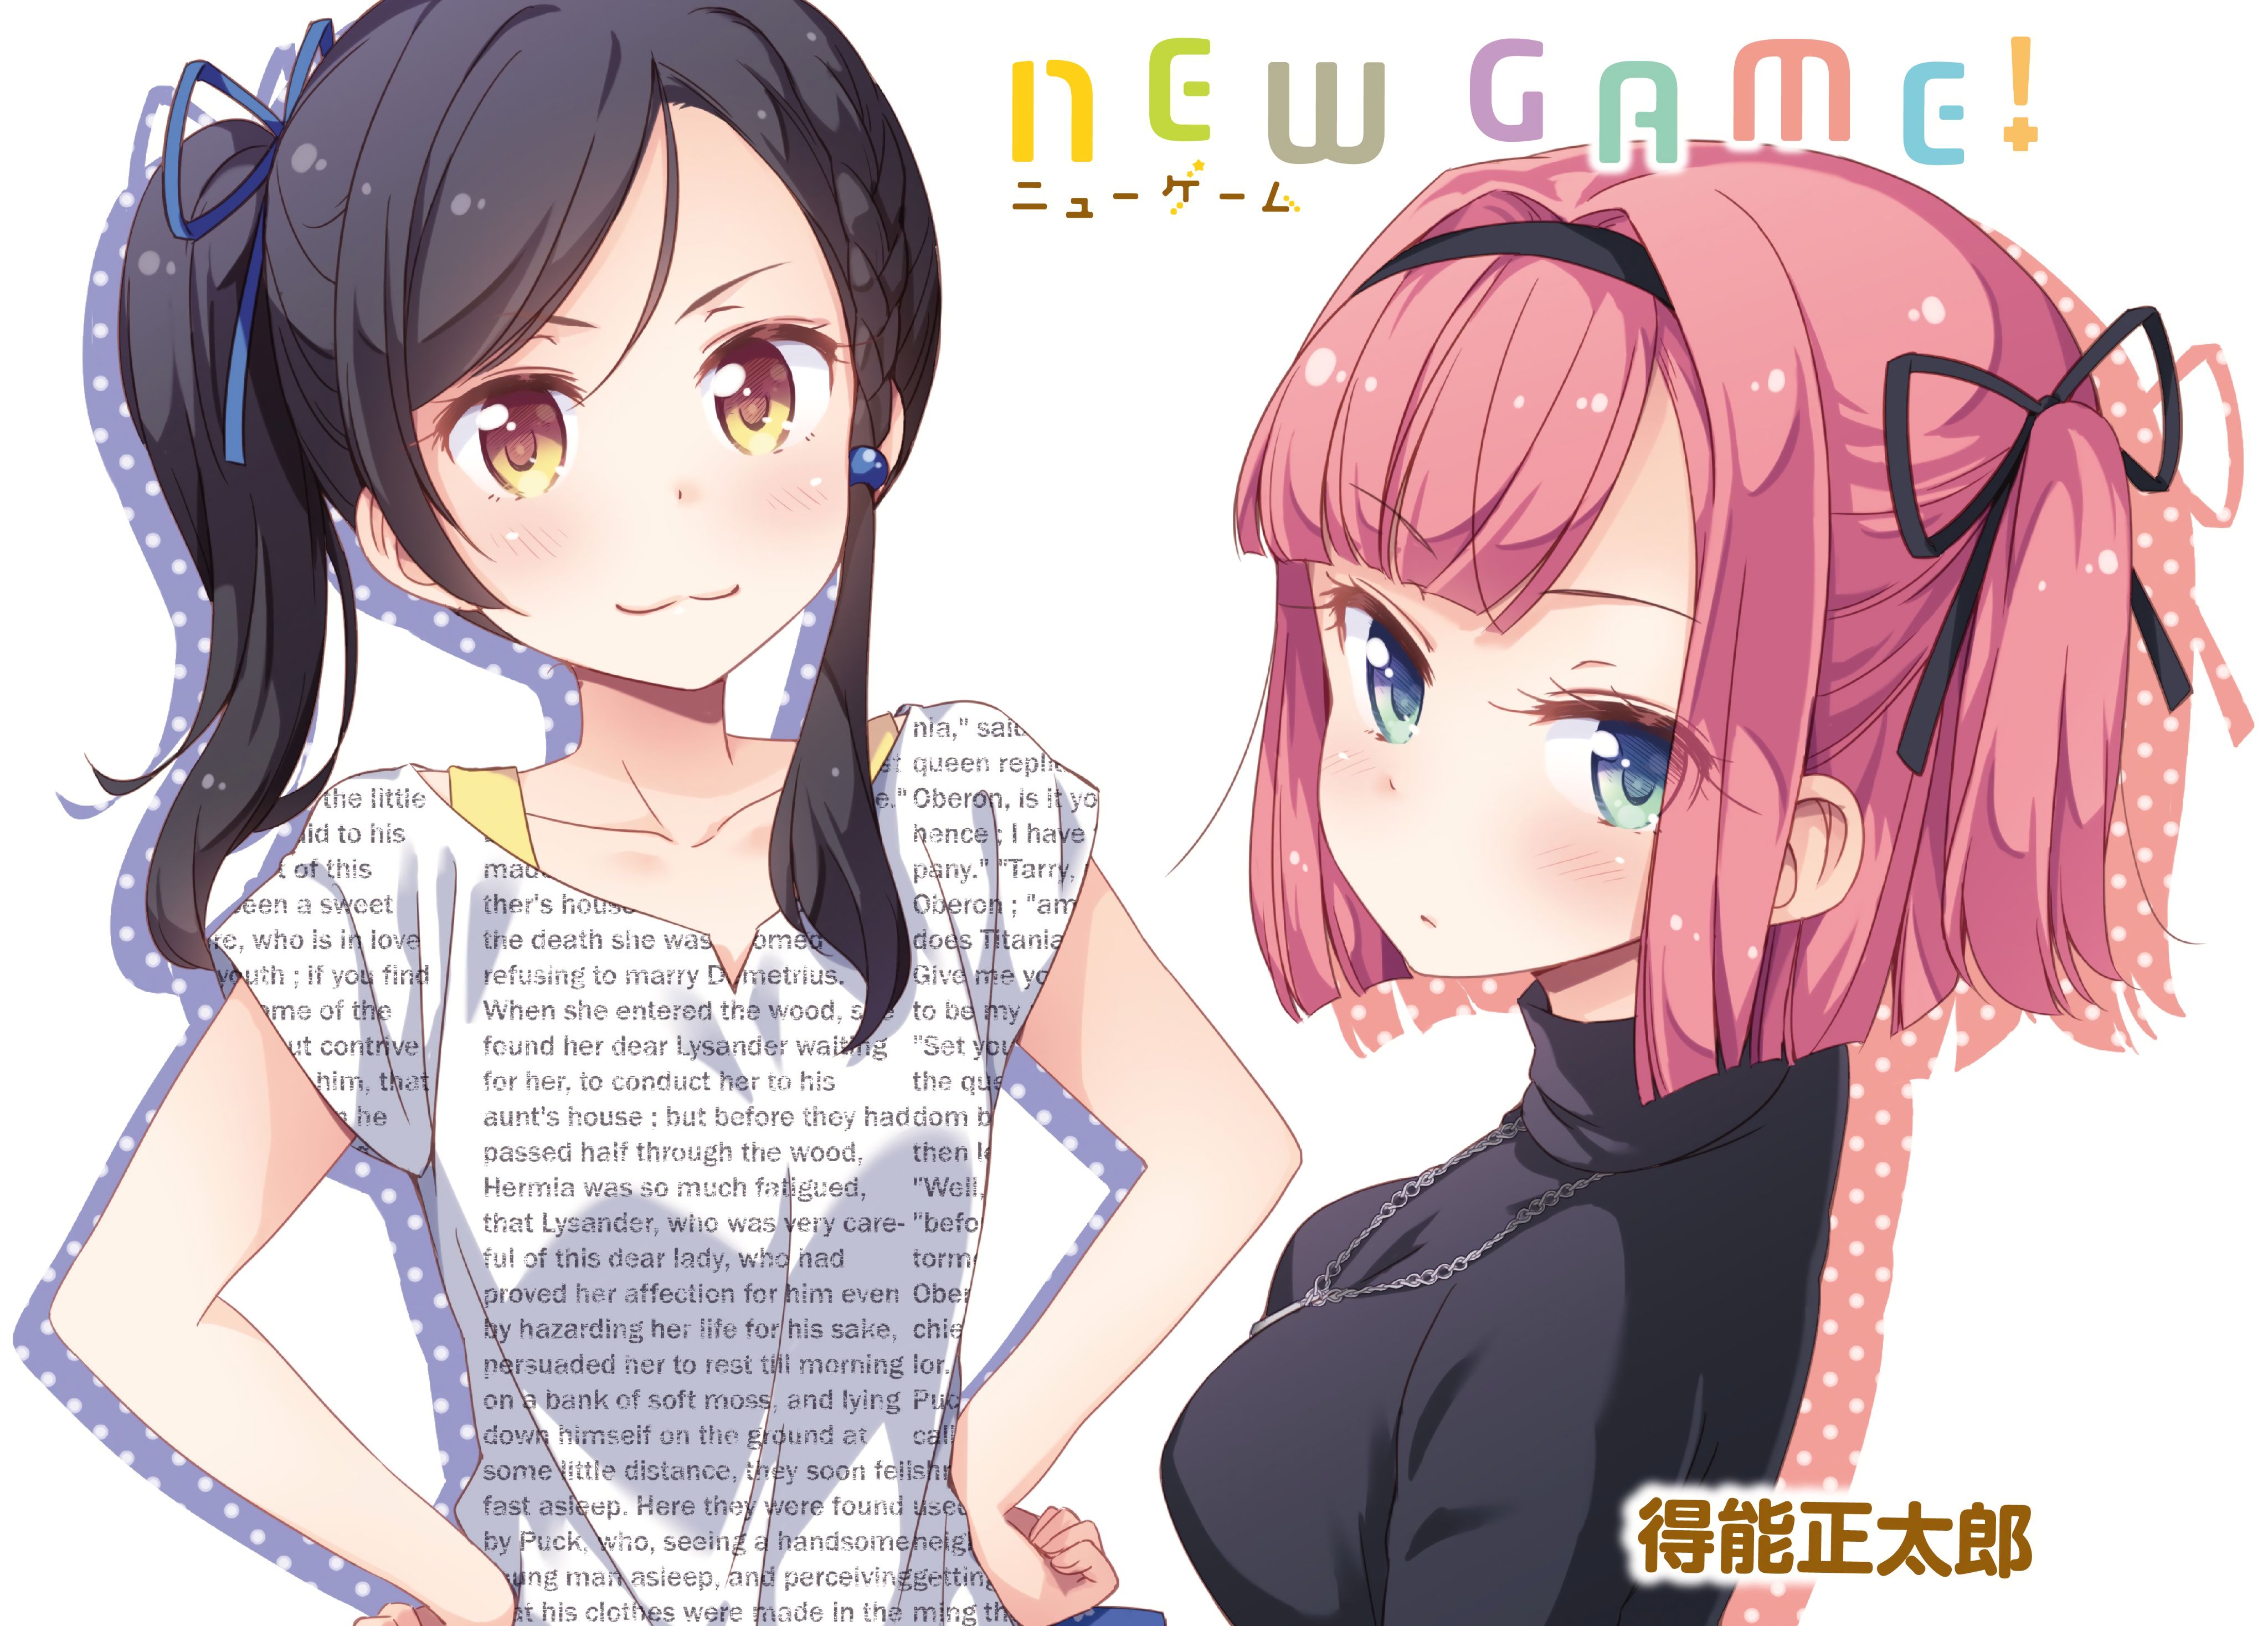 Baixar papel de parede para celular de Anime, New Game! gratuito.